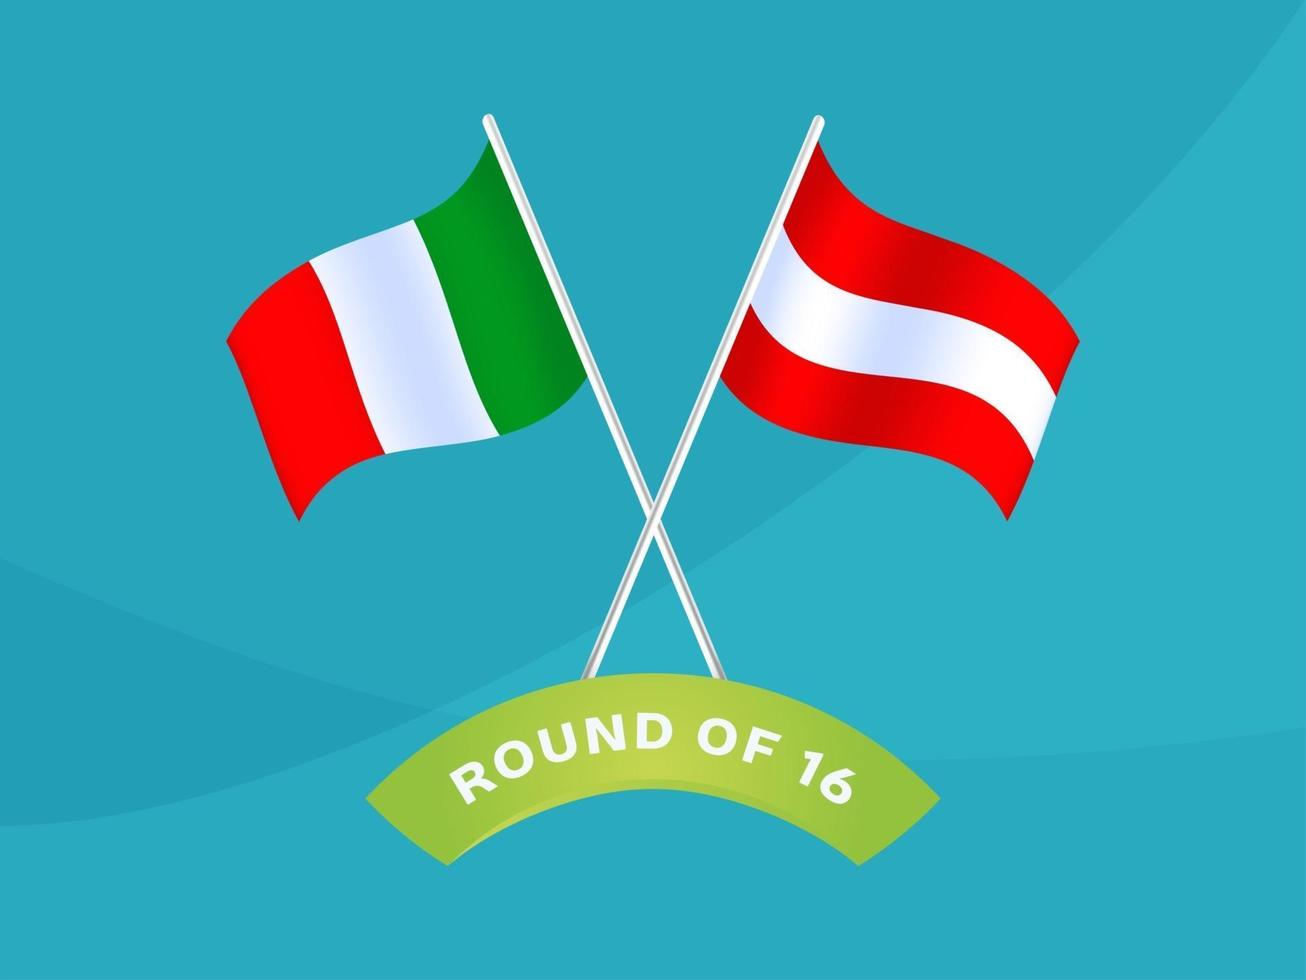 itália vs Áustria rodada de 16 partidas, ilustração em vetor campeonato europeu de futebol 2020. jogo do campeonato de futebol 2020 contra times - introdução ao fundo do esporte